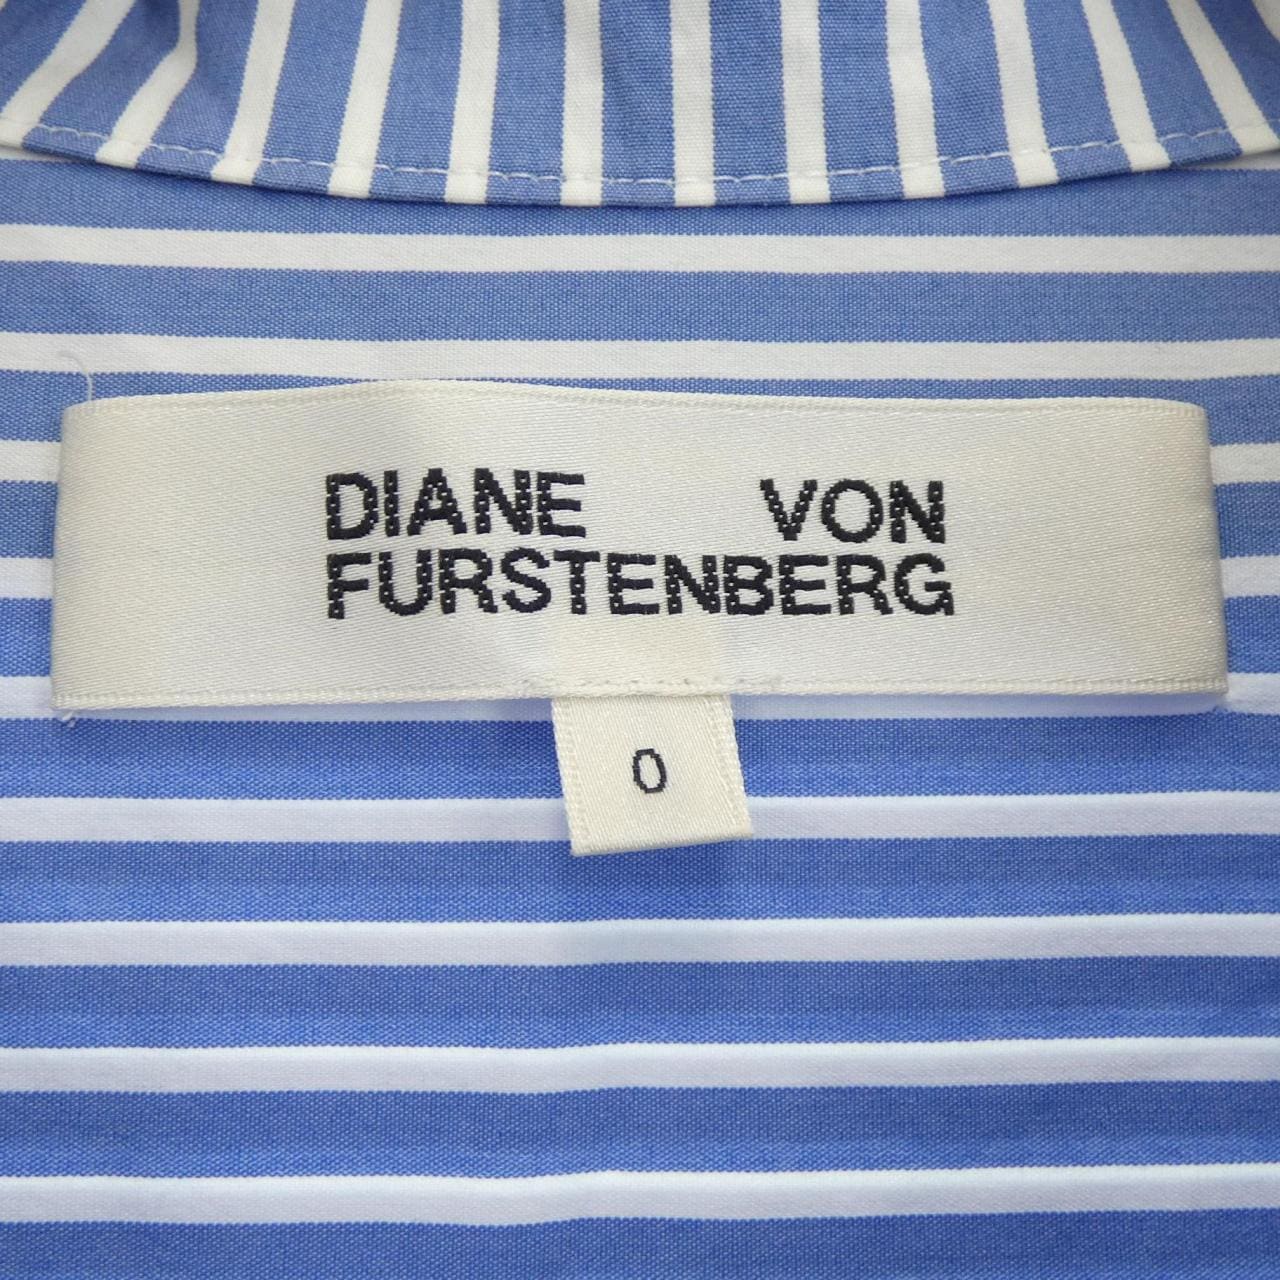 Diane von Furstenberg DIANE vonFURSTENBERG襯衫